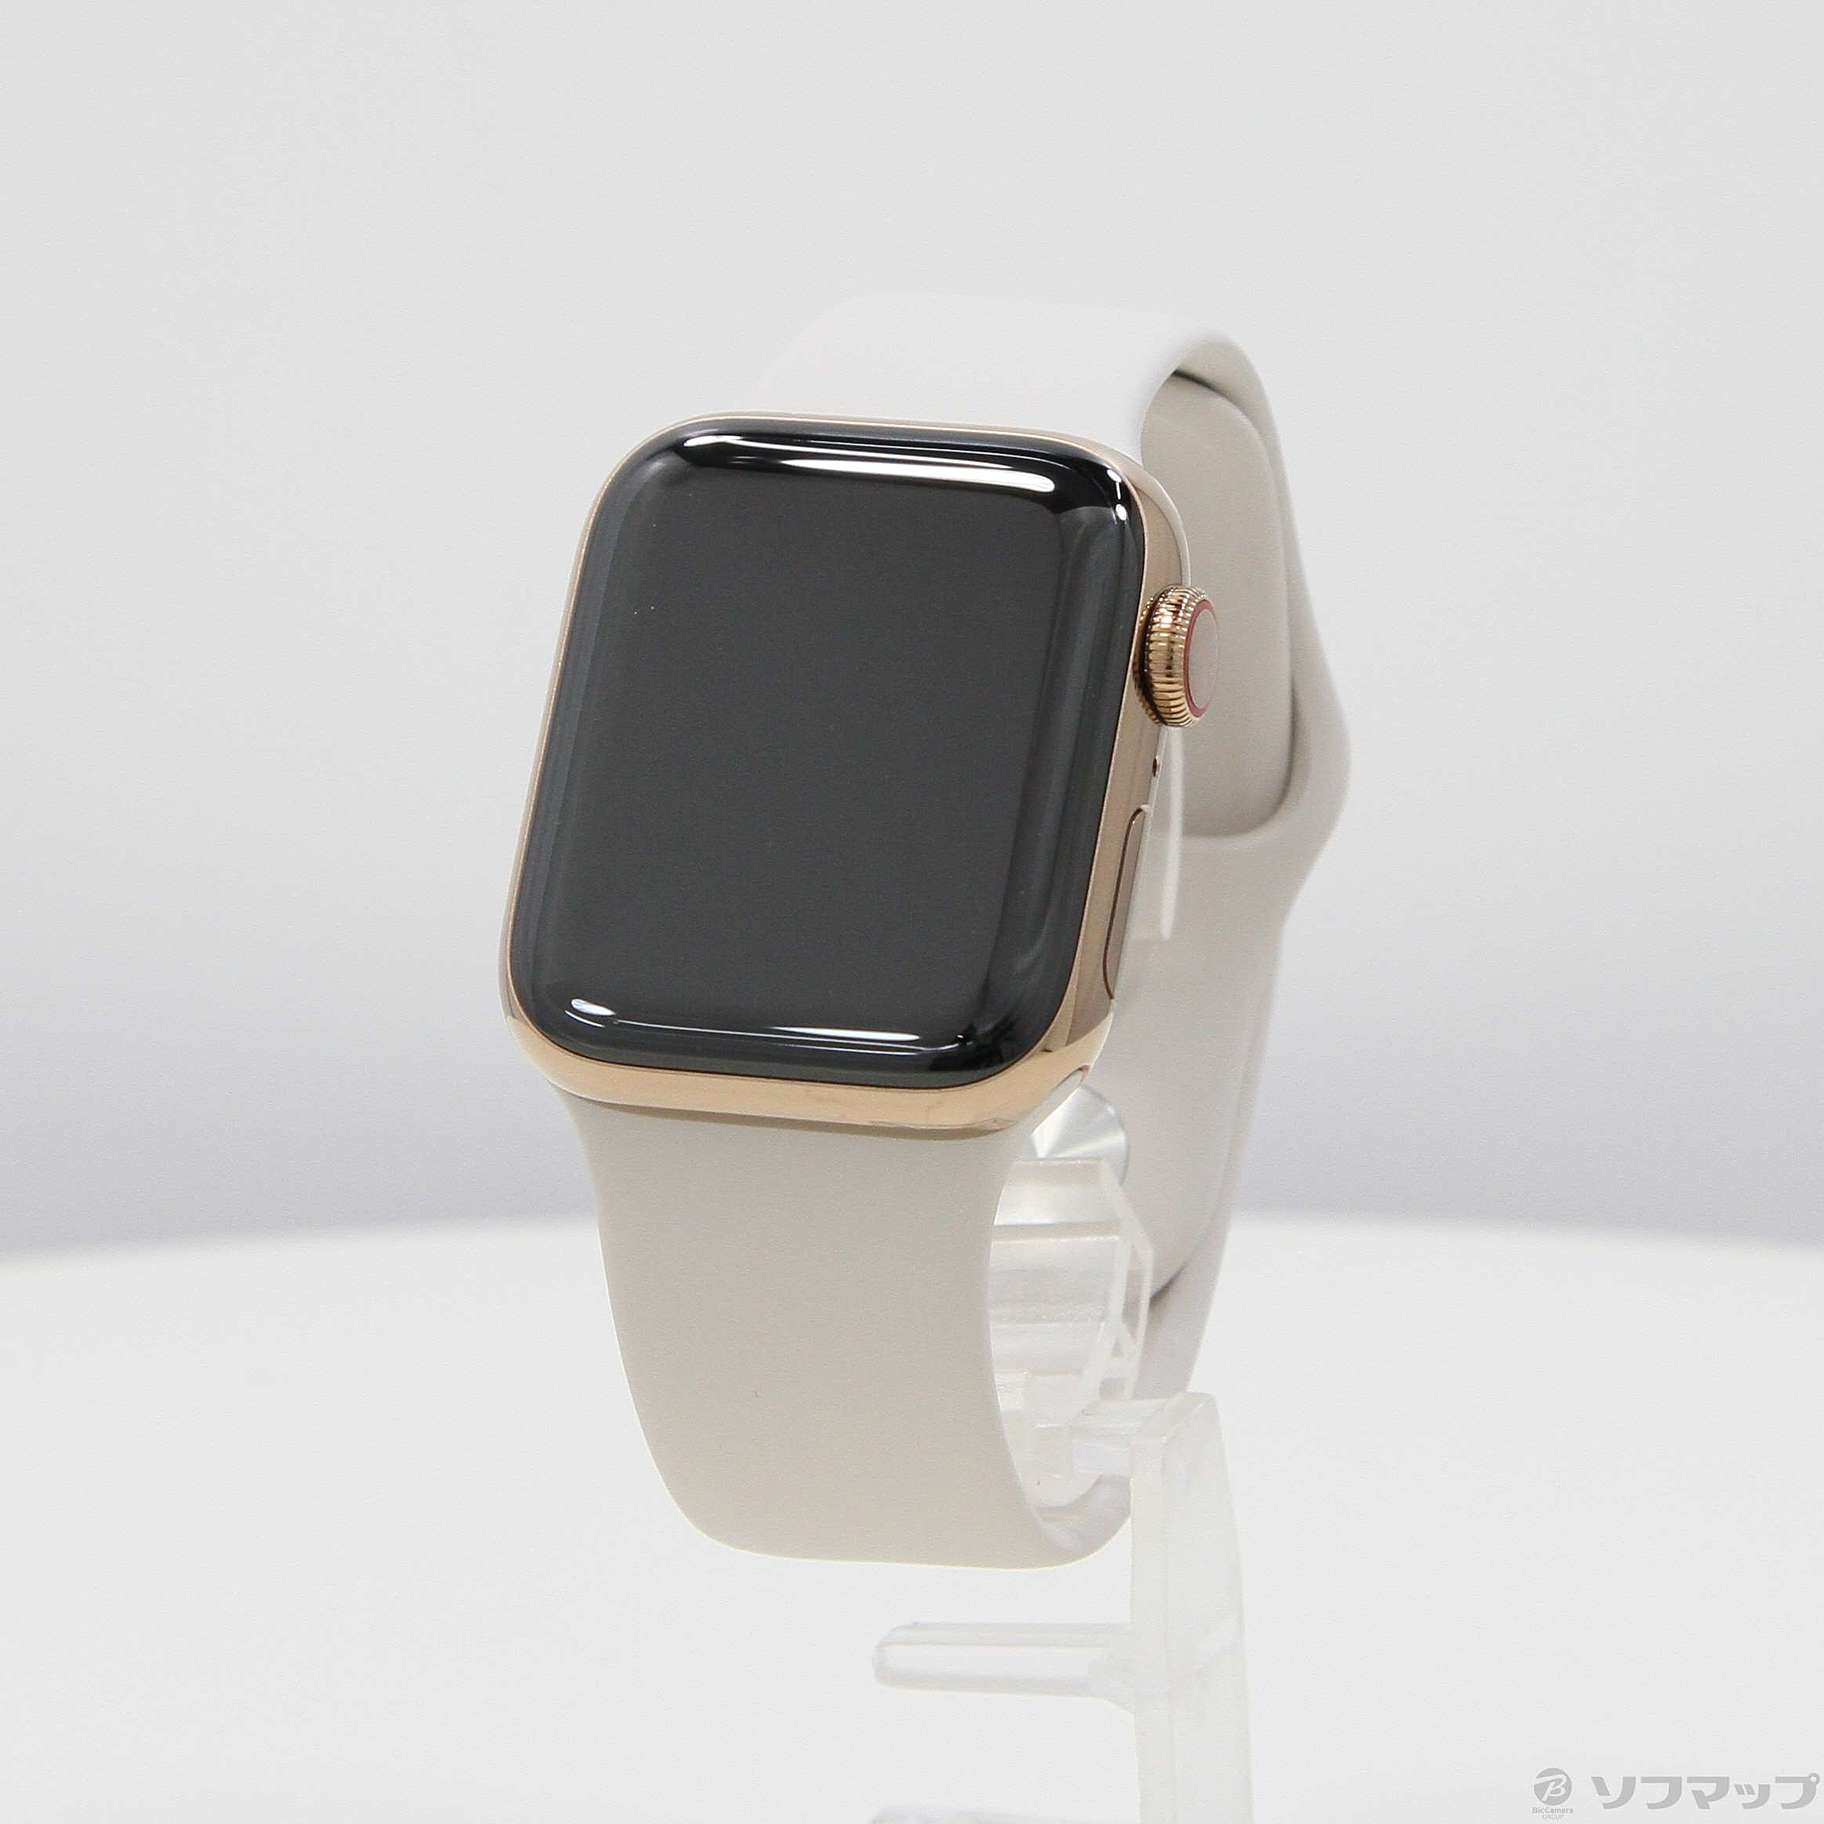 〔展示品〕 Apple Watch Series 5 GPS + Cellular 40mm ステンレススチールケース ストーンスポーツバンド